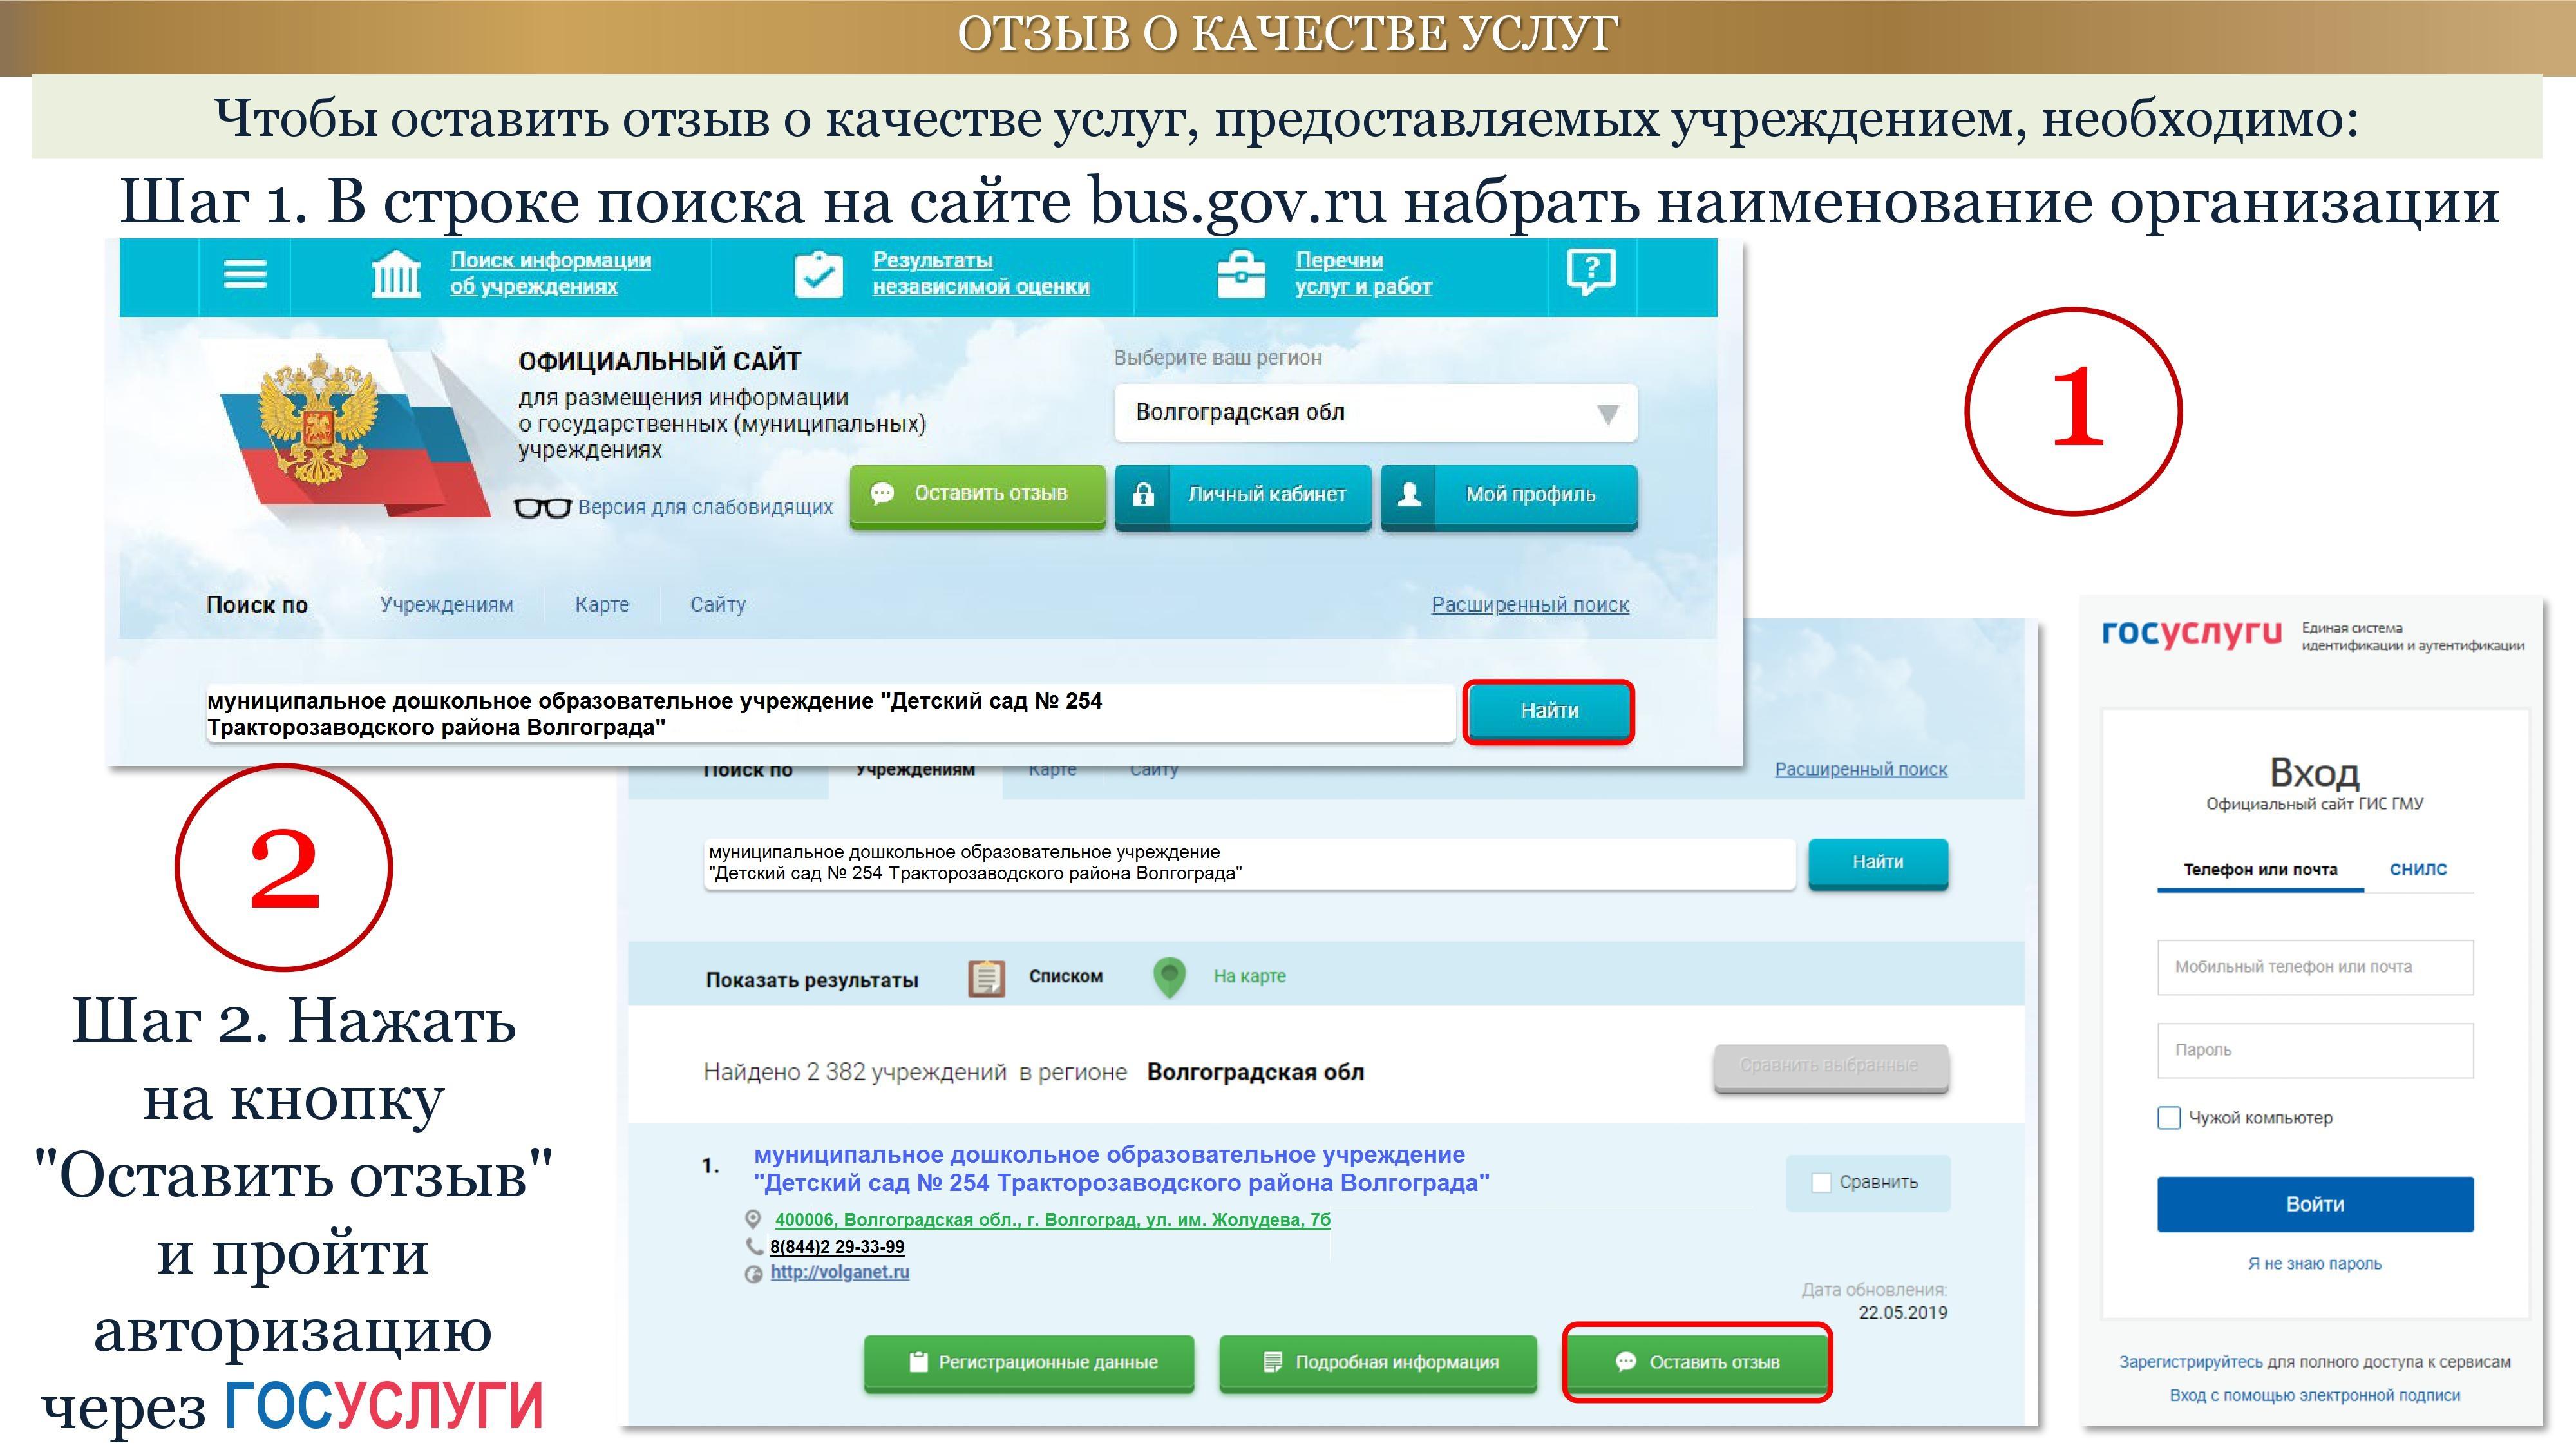 Https edu gov ru authorize. Бас гов ру. Оценка качества предоставляемых услуг образования.